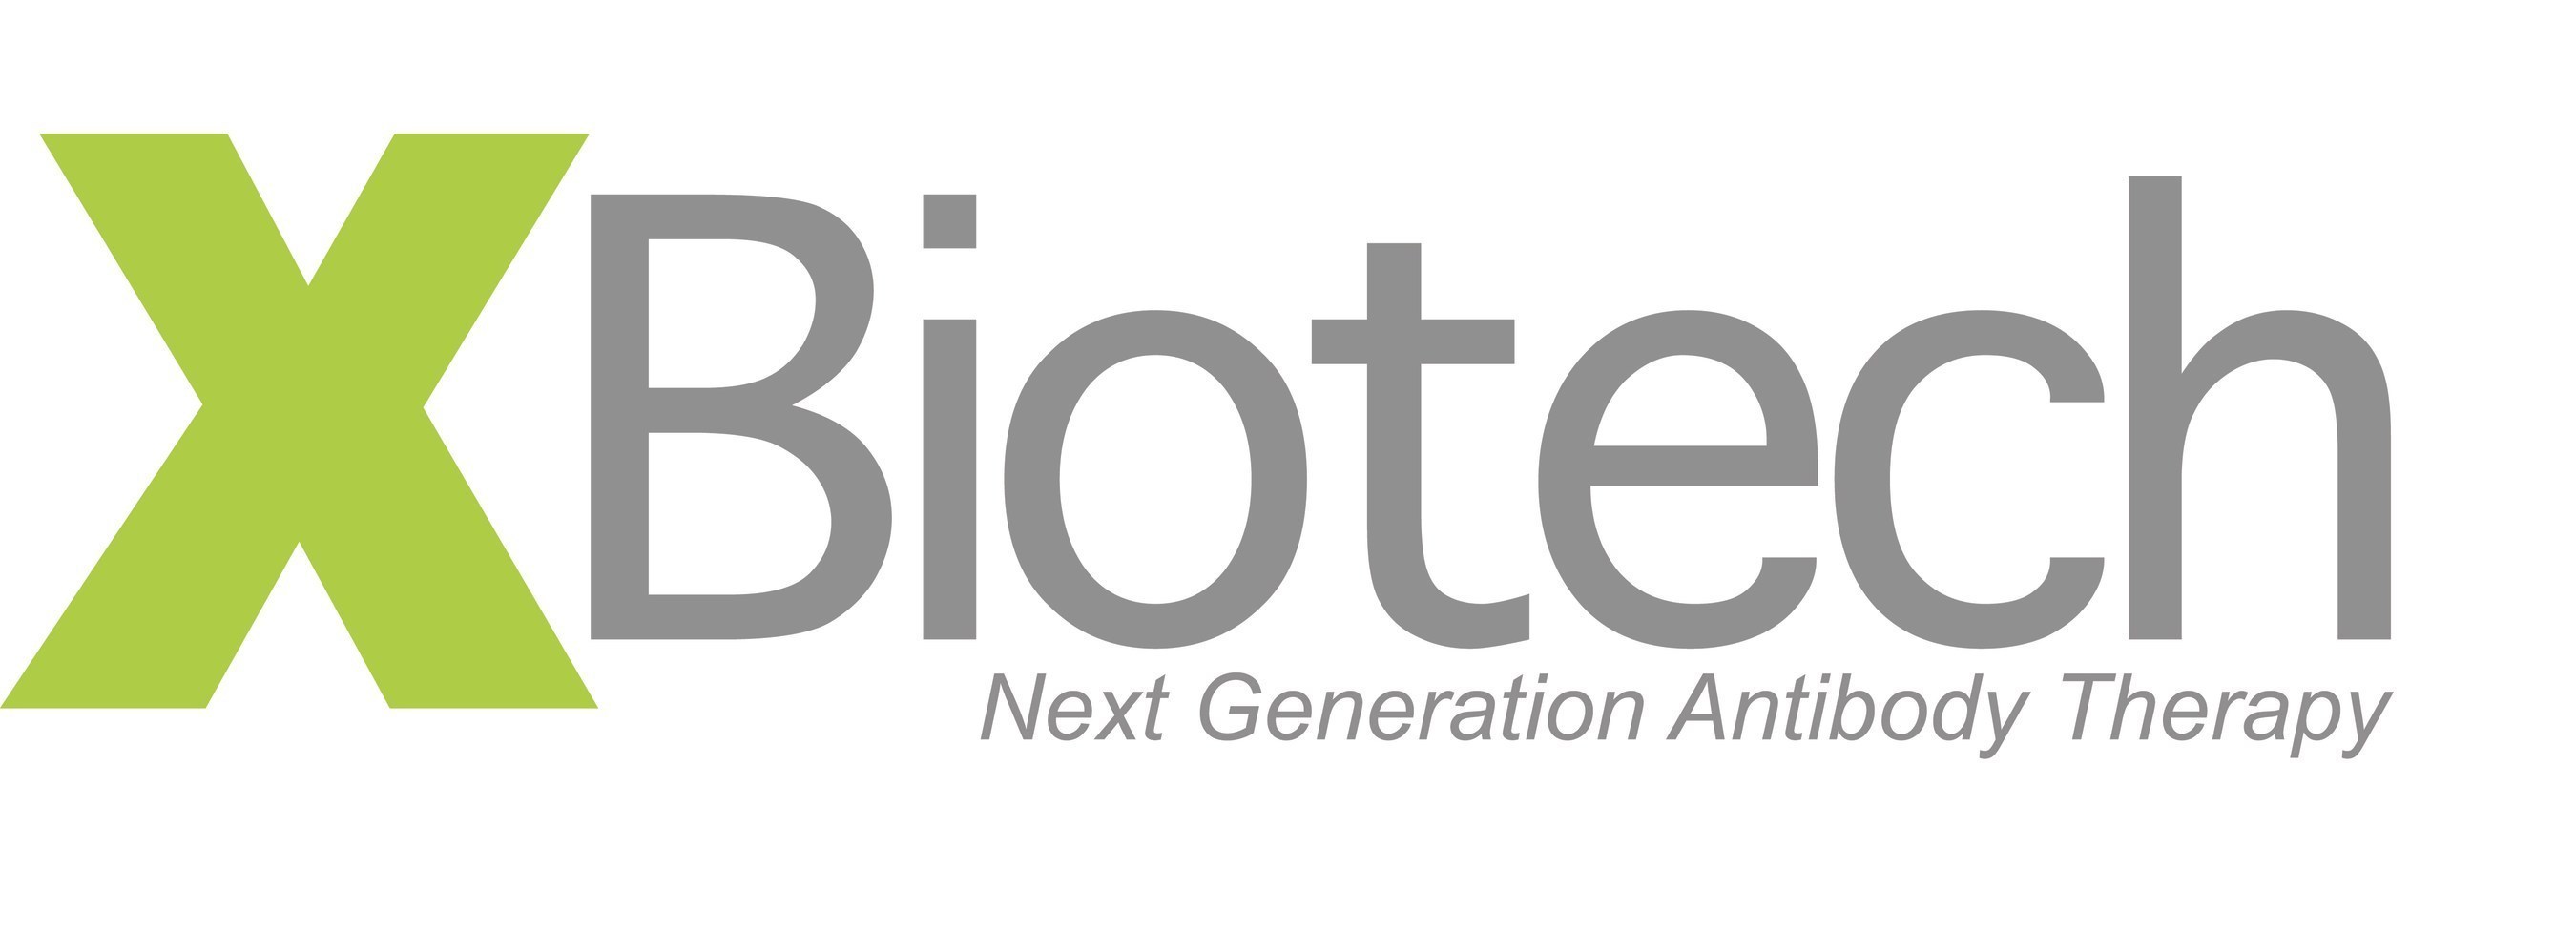 XBiotech Next Generation Antibody Therapy